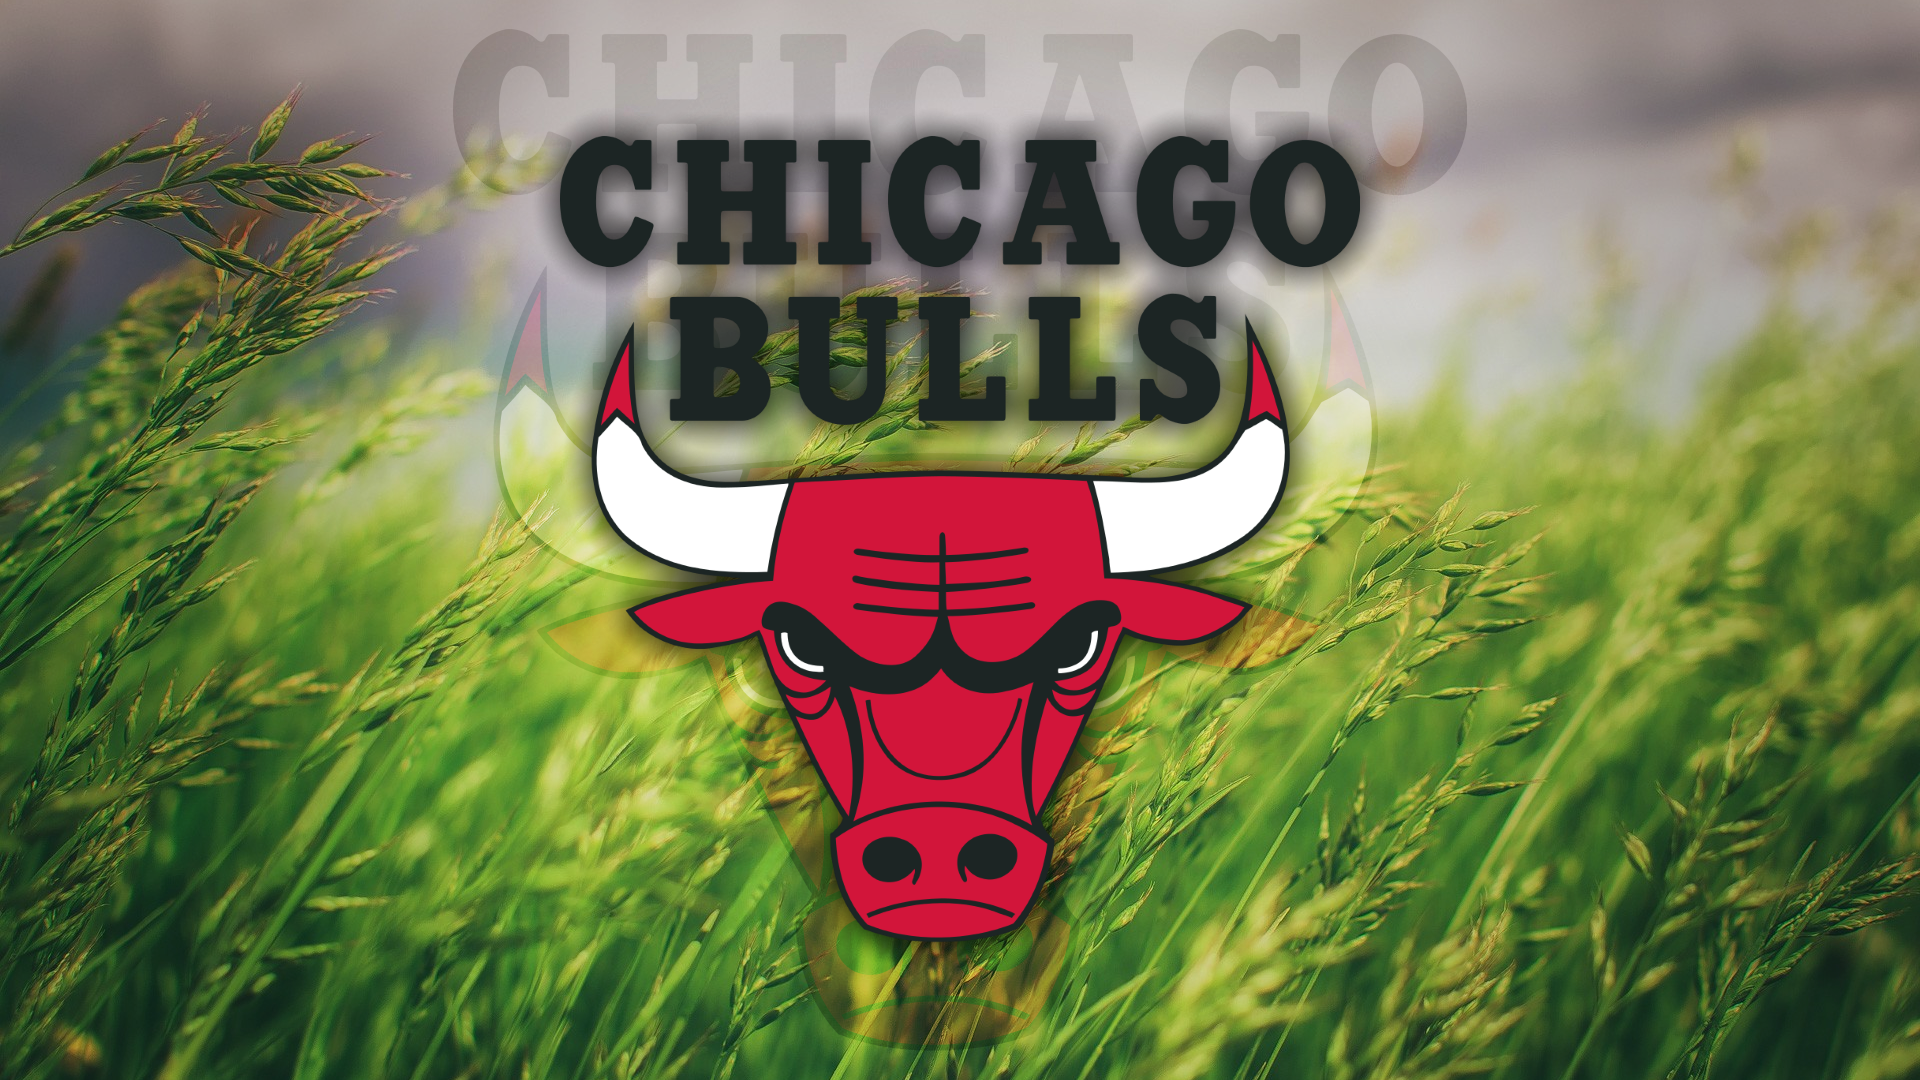 General 1920x1080 Chicago Bulls grass logo basketball NBA